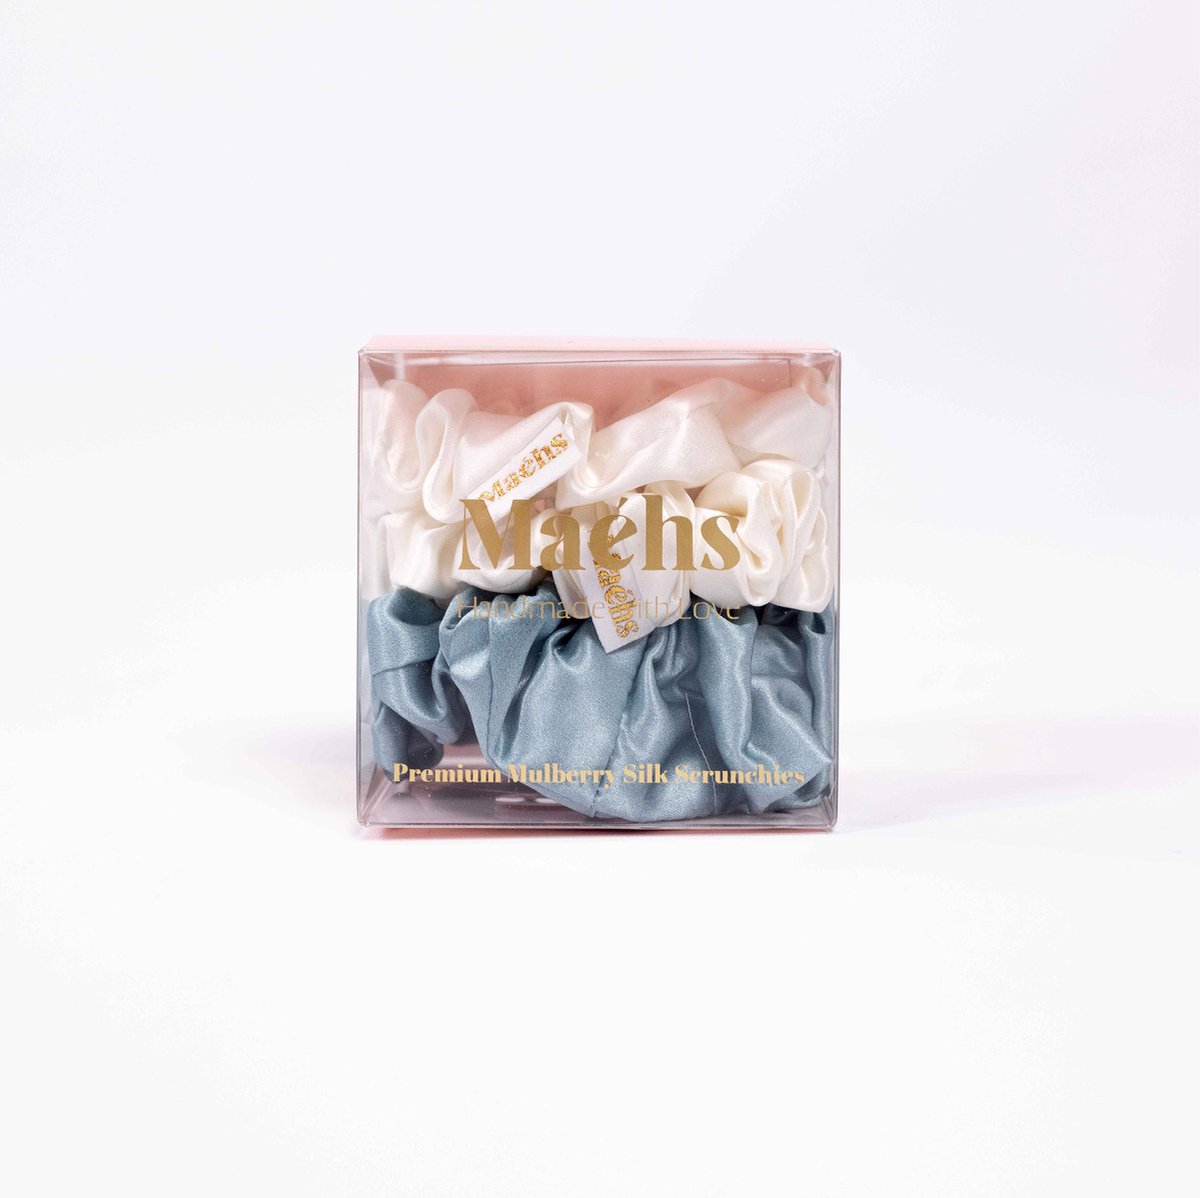 Maéhs Set van 3 scrunchies 2x medium en large, haaraccessoires - haarelastiekjes - 100% moerbei zijde, kwaliteit 22 Momme - Kleur ether ivory ether- cadeautip